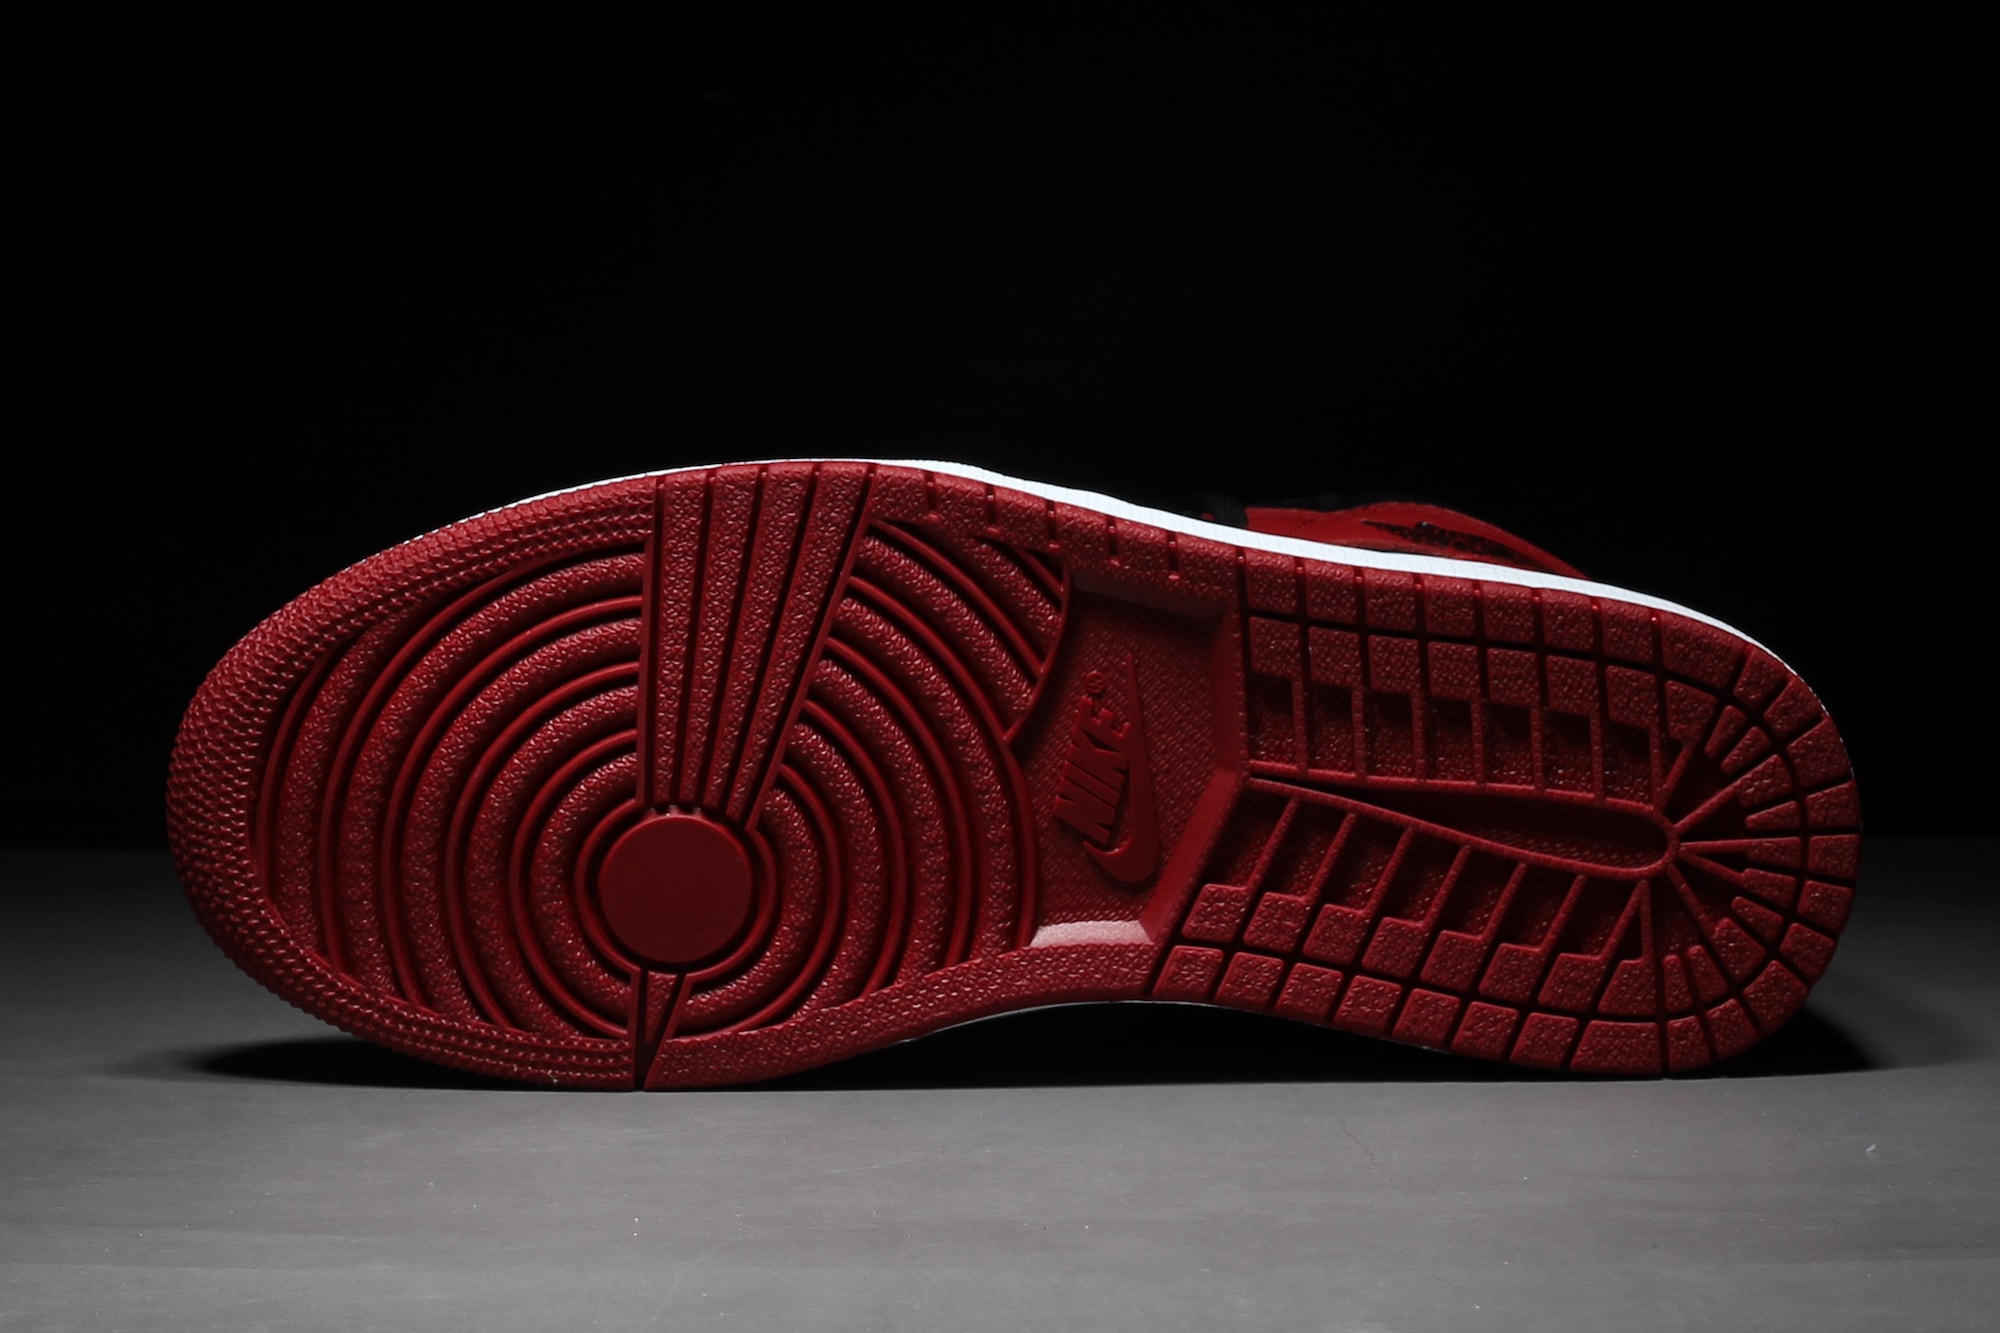 Update: 藤原浩否認 fragment design x Air Jordan 1 將推出「Black Toe」配色